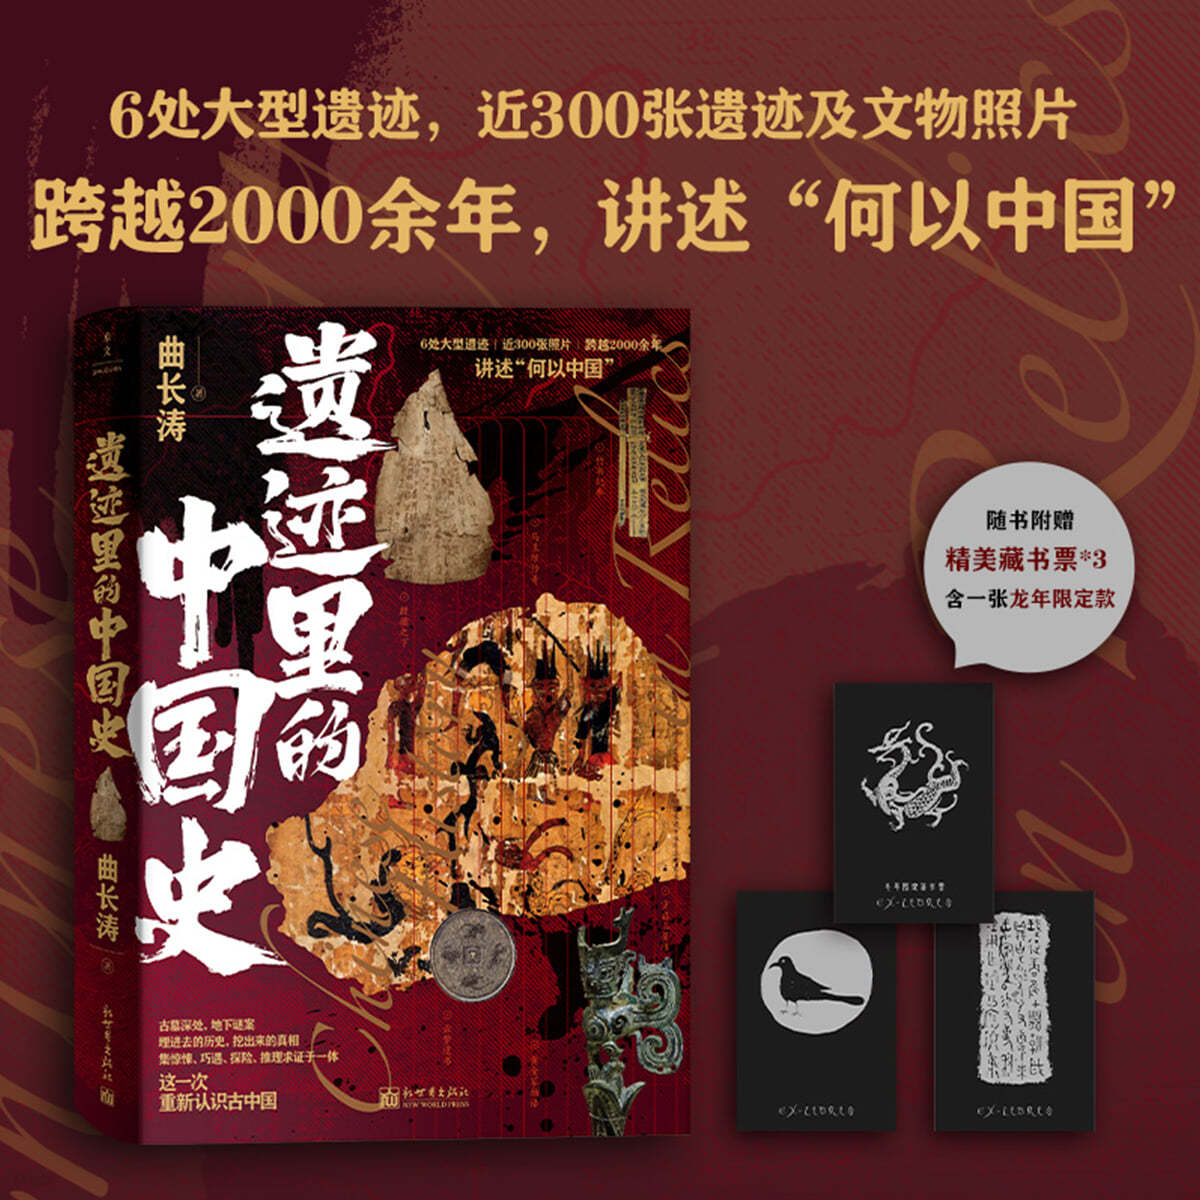 遺跡裏的中國史 유적속의 중국사